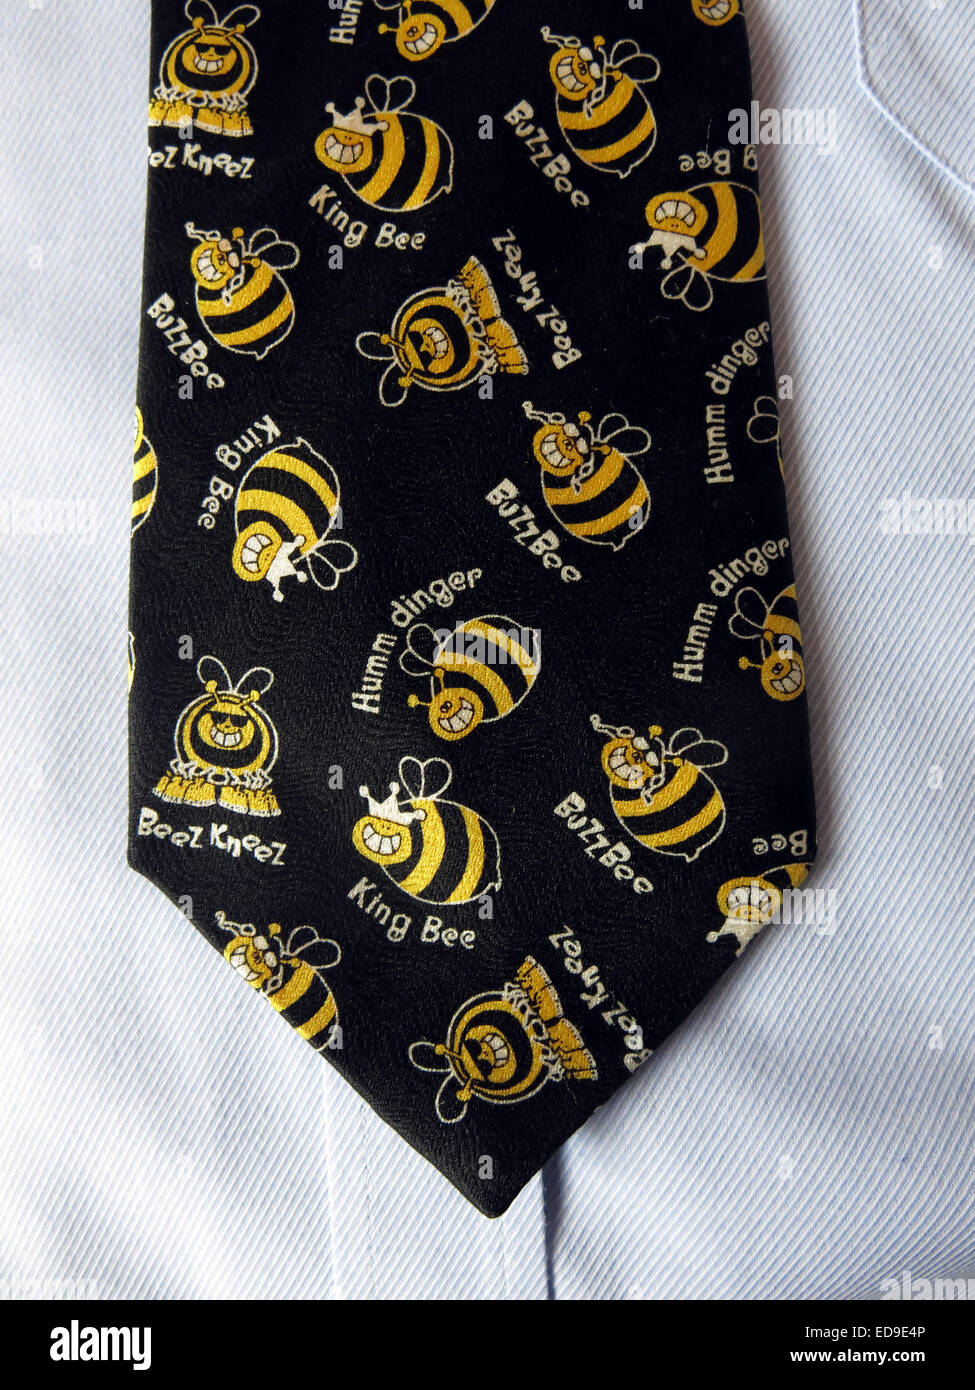 Avon vintage intéressant cravate avec les abeilles à l'égalité, homme neckware en soie Banque D'Images